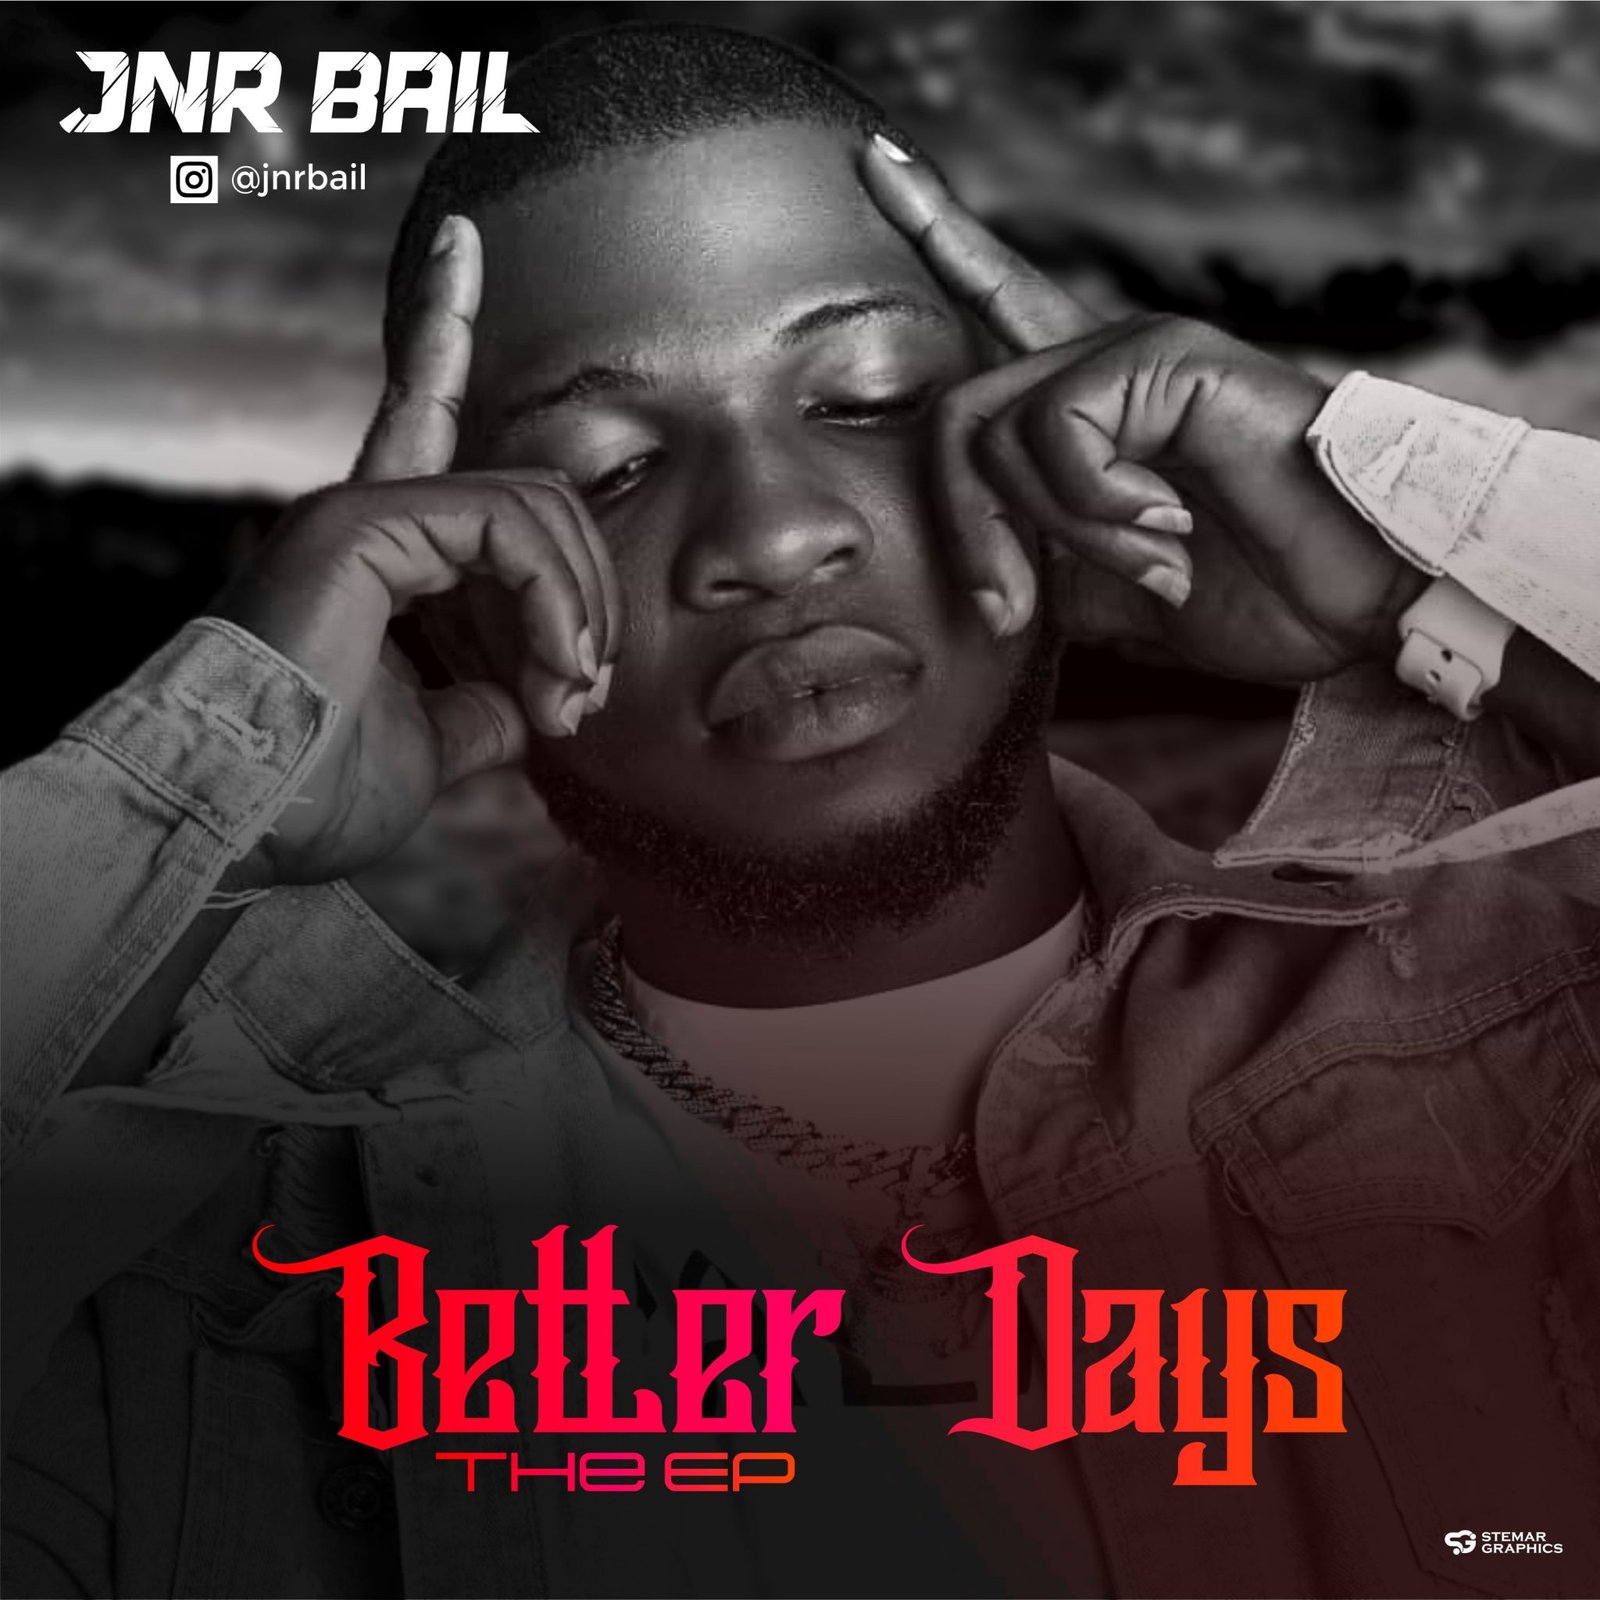 jnr bail better days1 ep